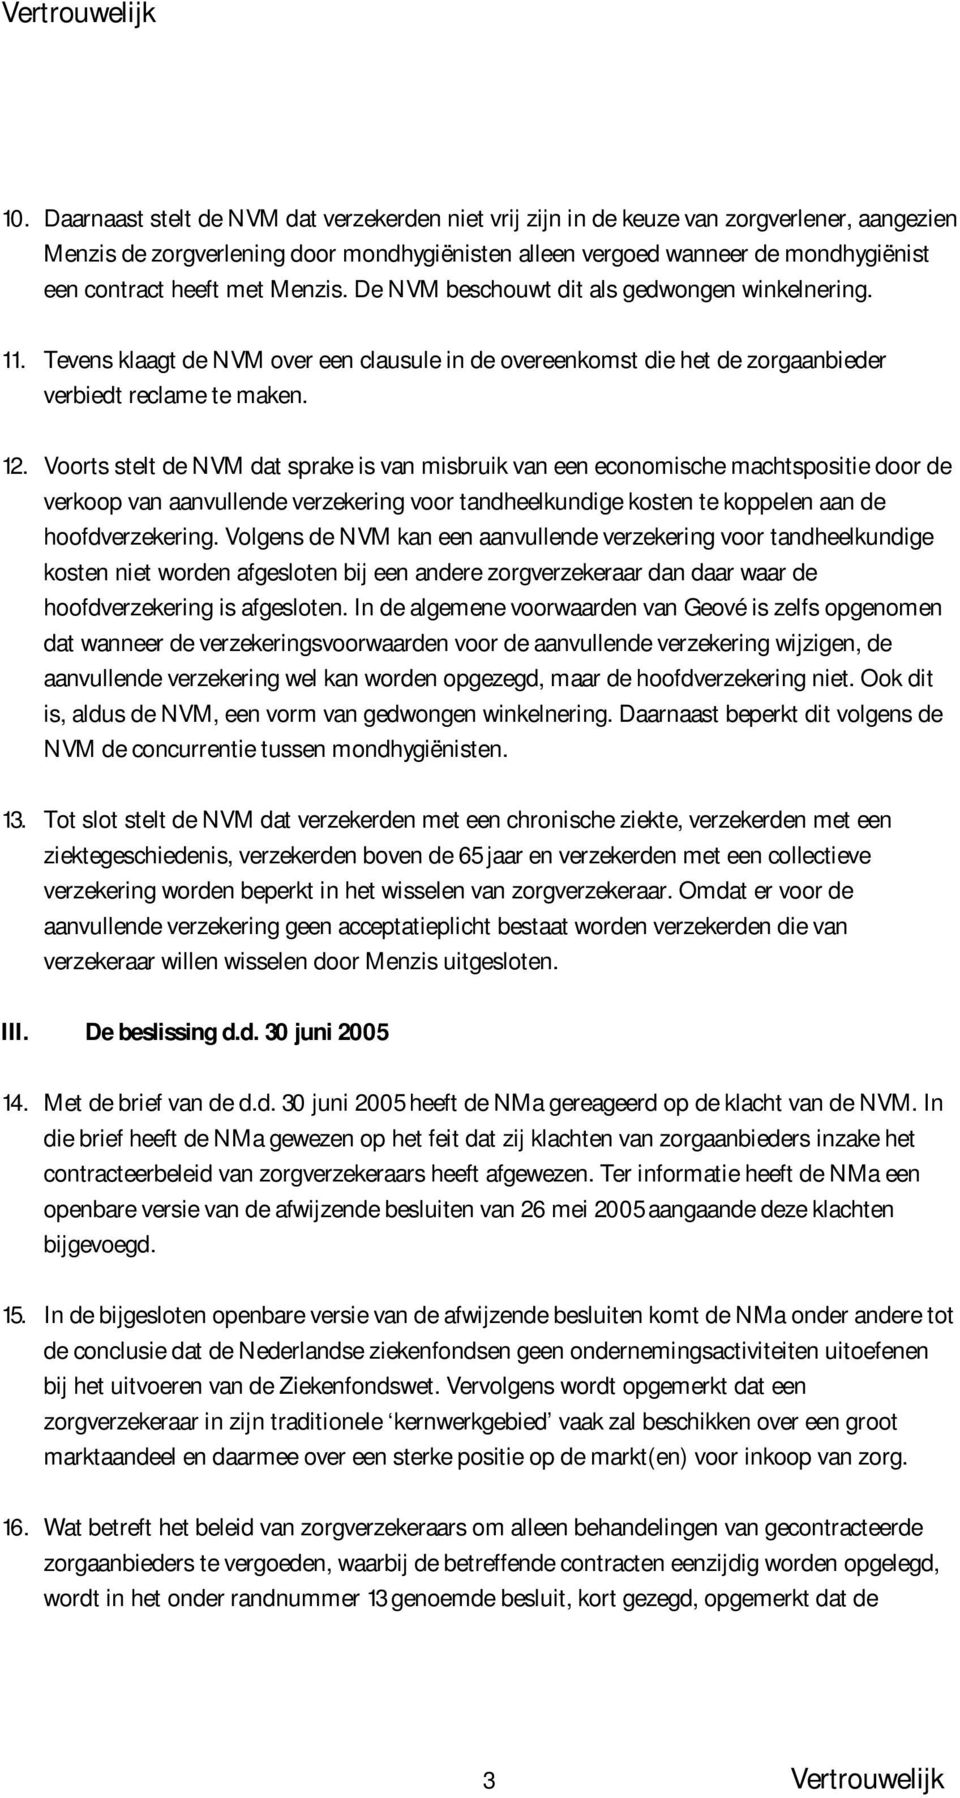 Voorts stelt de NVM dat sprake is van misbruik van een economische machtspositie door de verkoop van aanvullende verzekering voor tandheelkundige kosten te koppelen aan de hoofdverzekering.